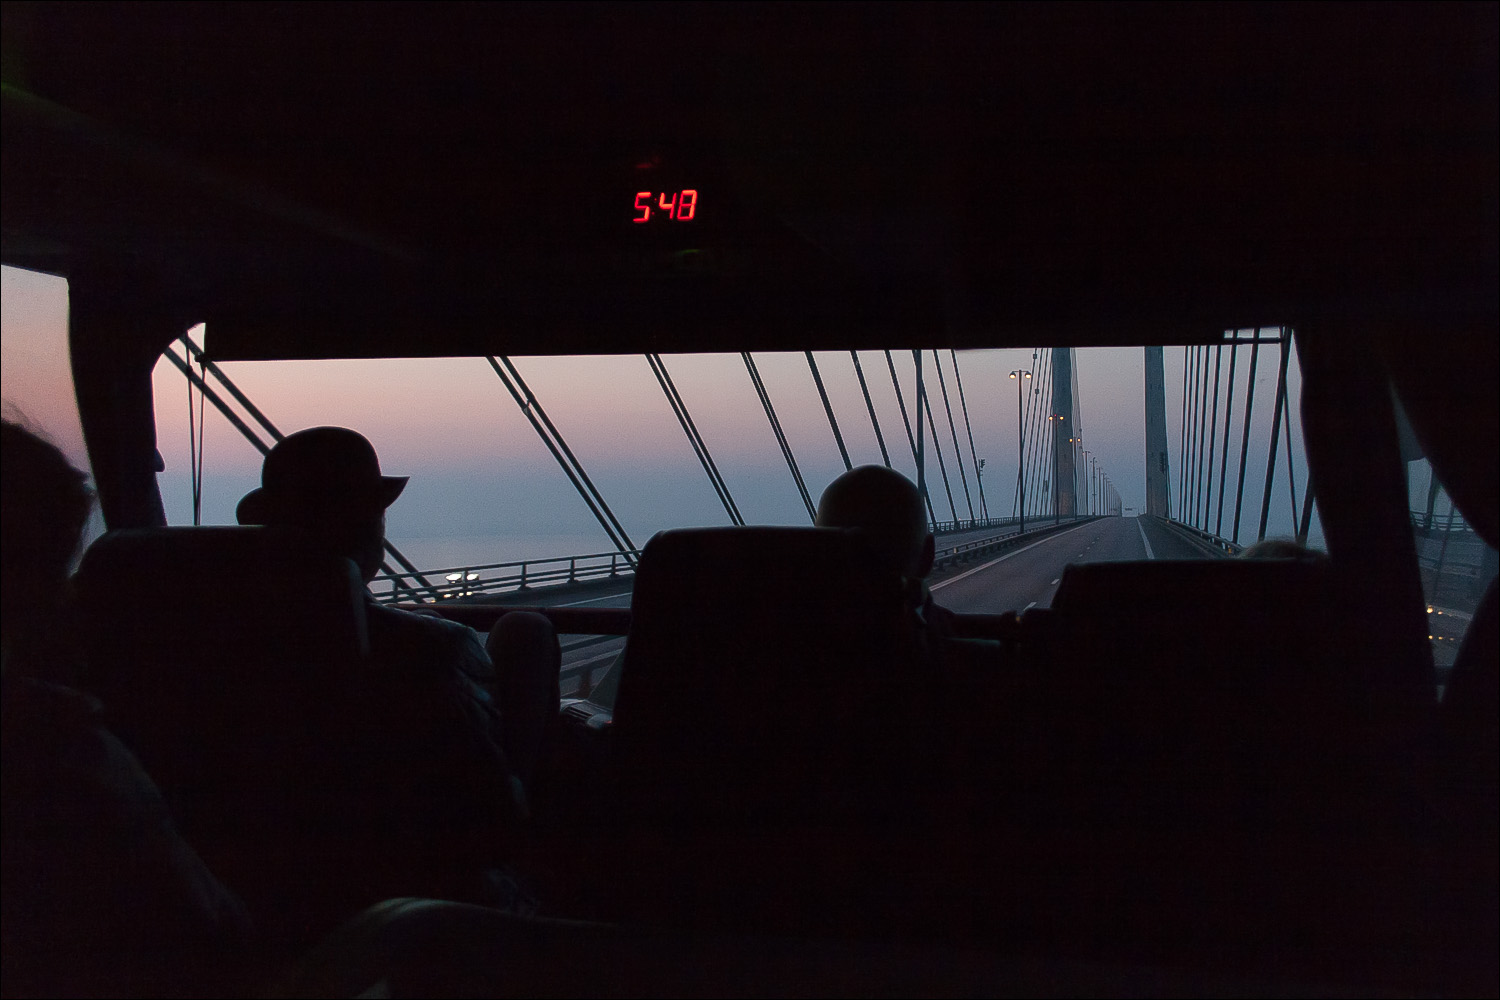 Øresundsbron 5:48